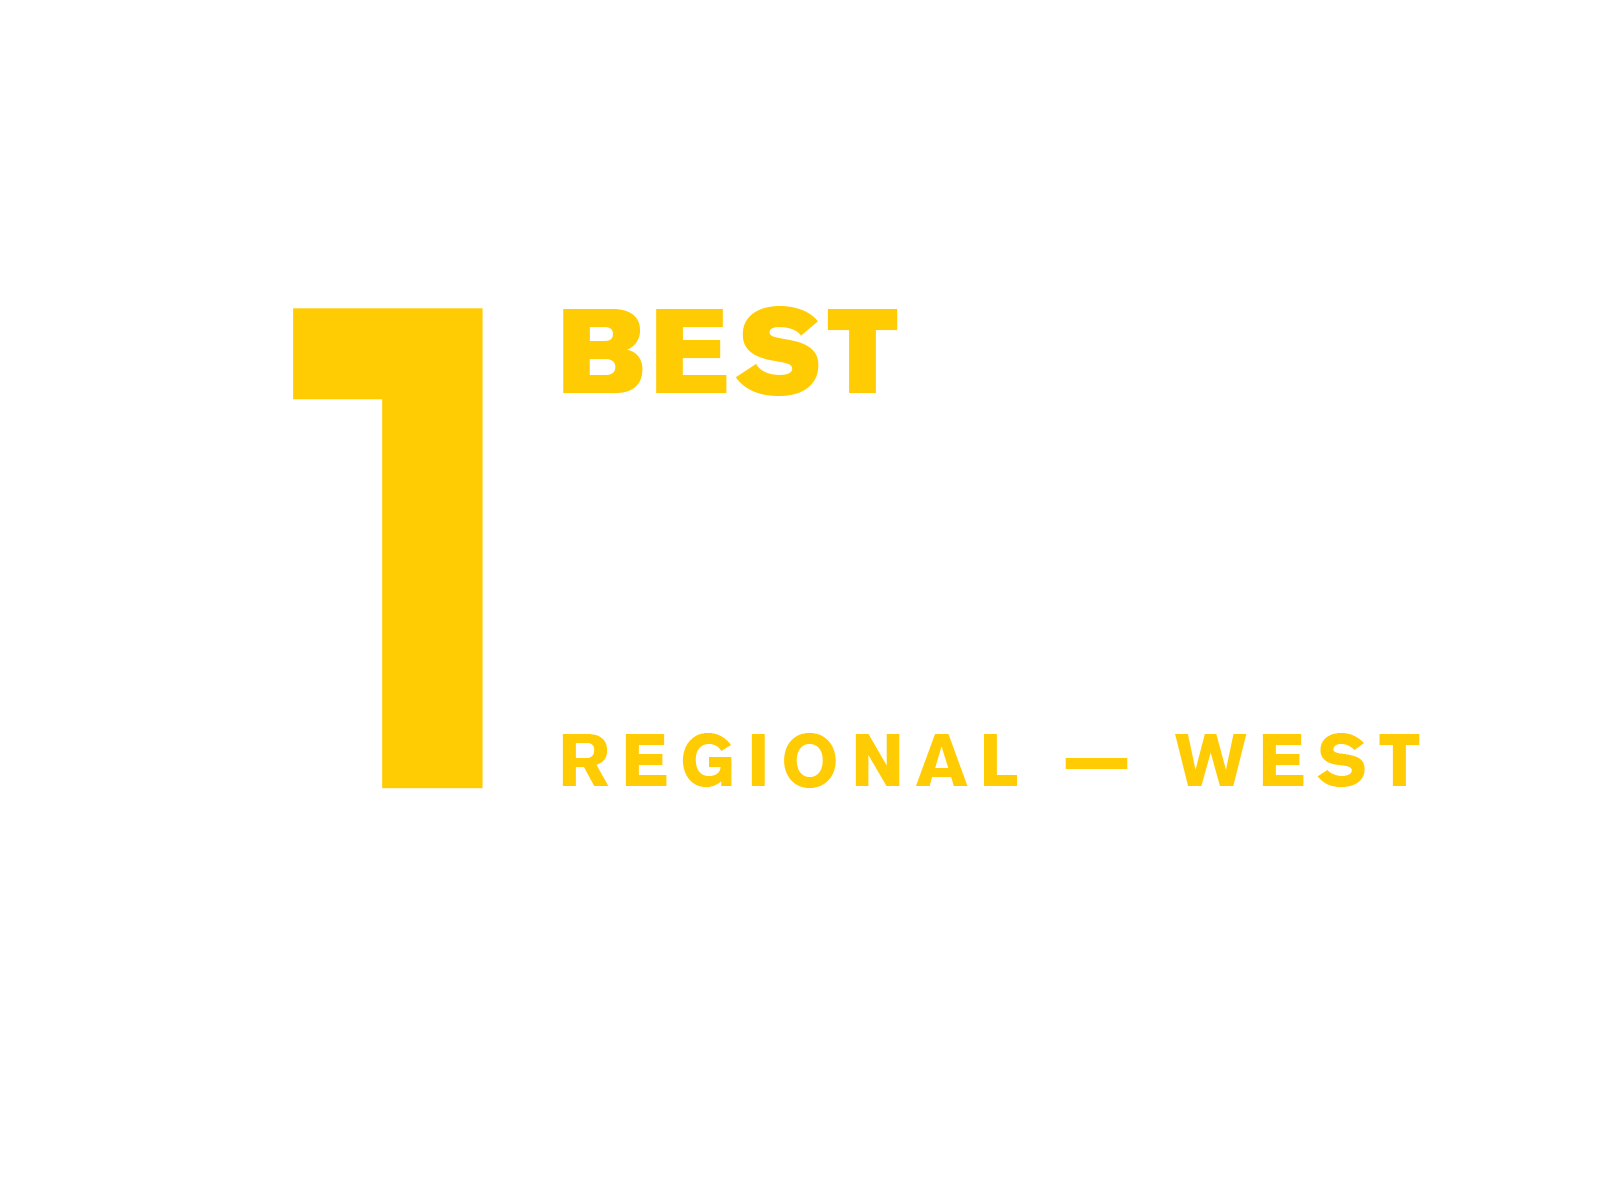 #1 - Best Regional Colleges, Prescott Campus